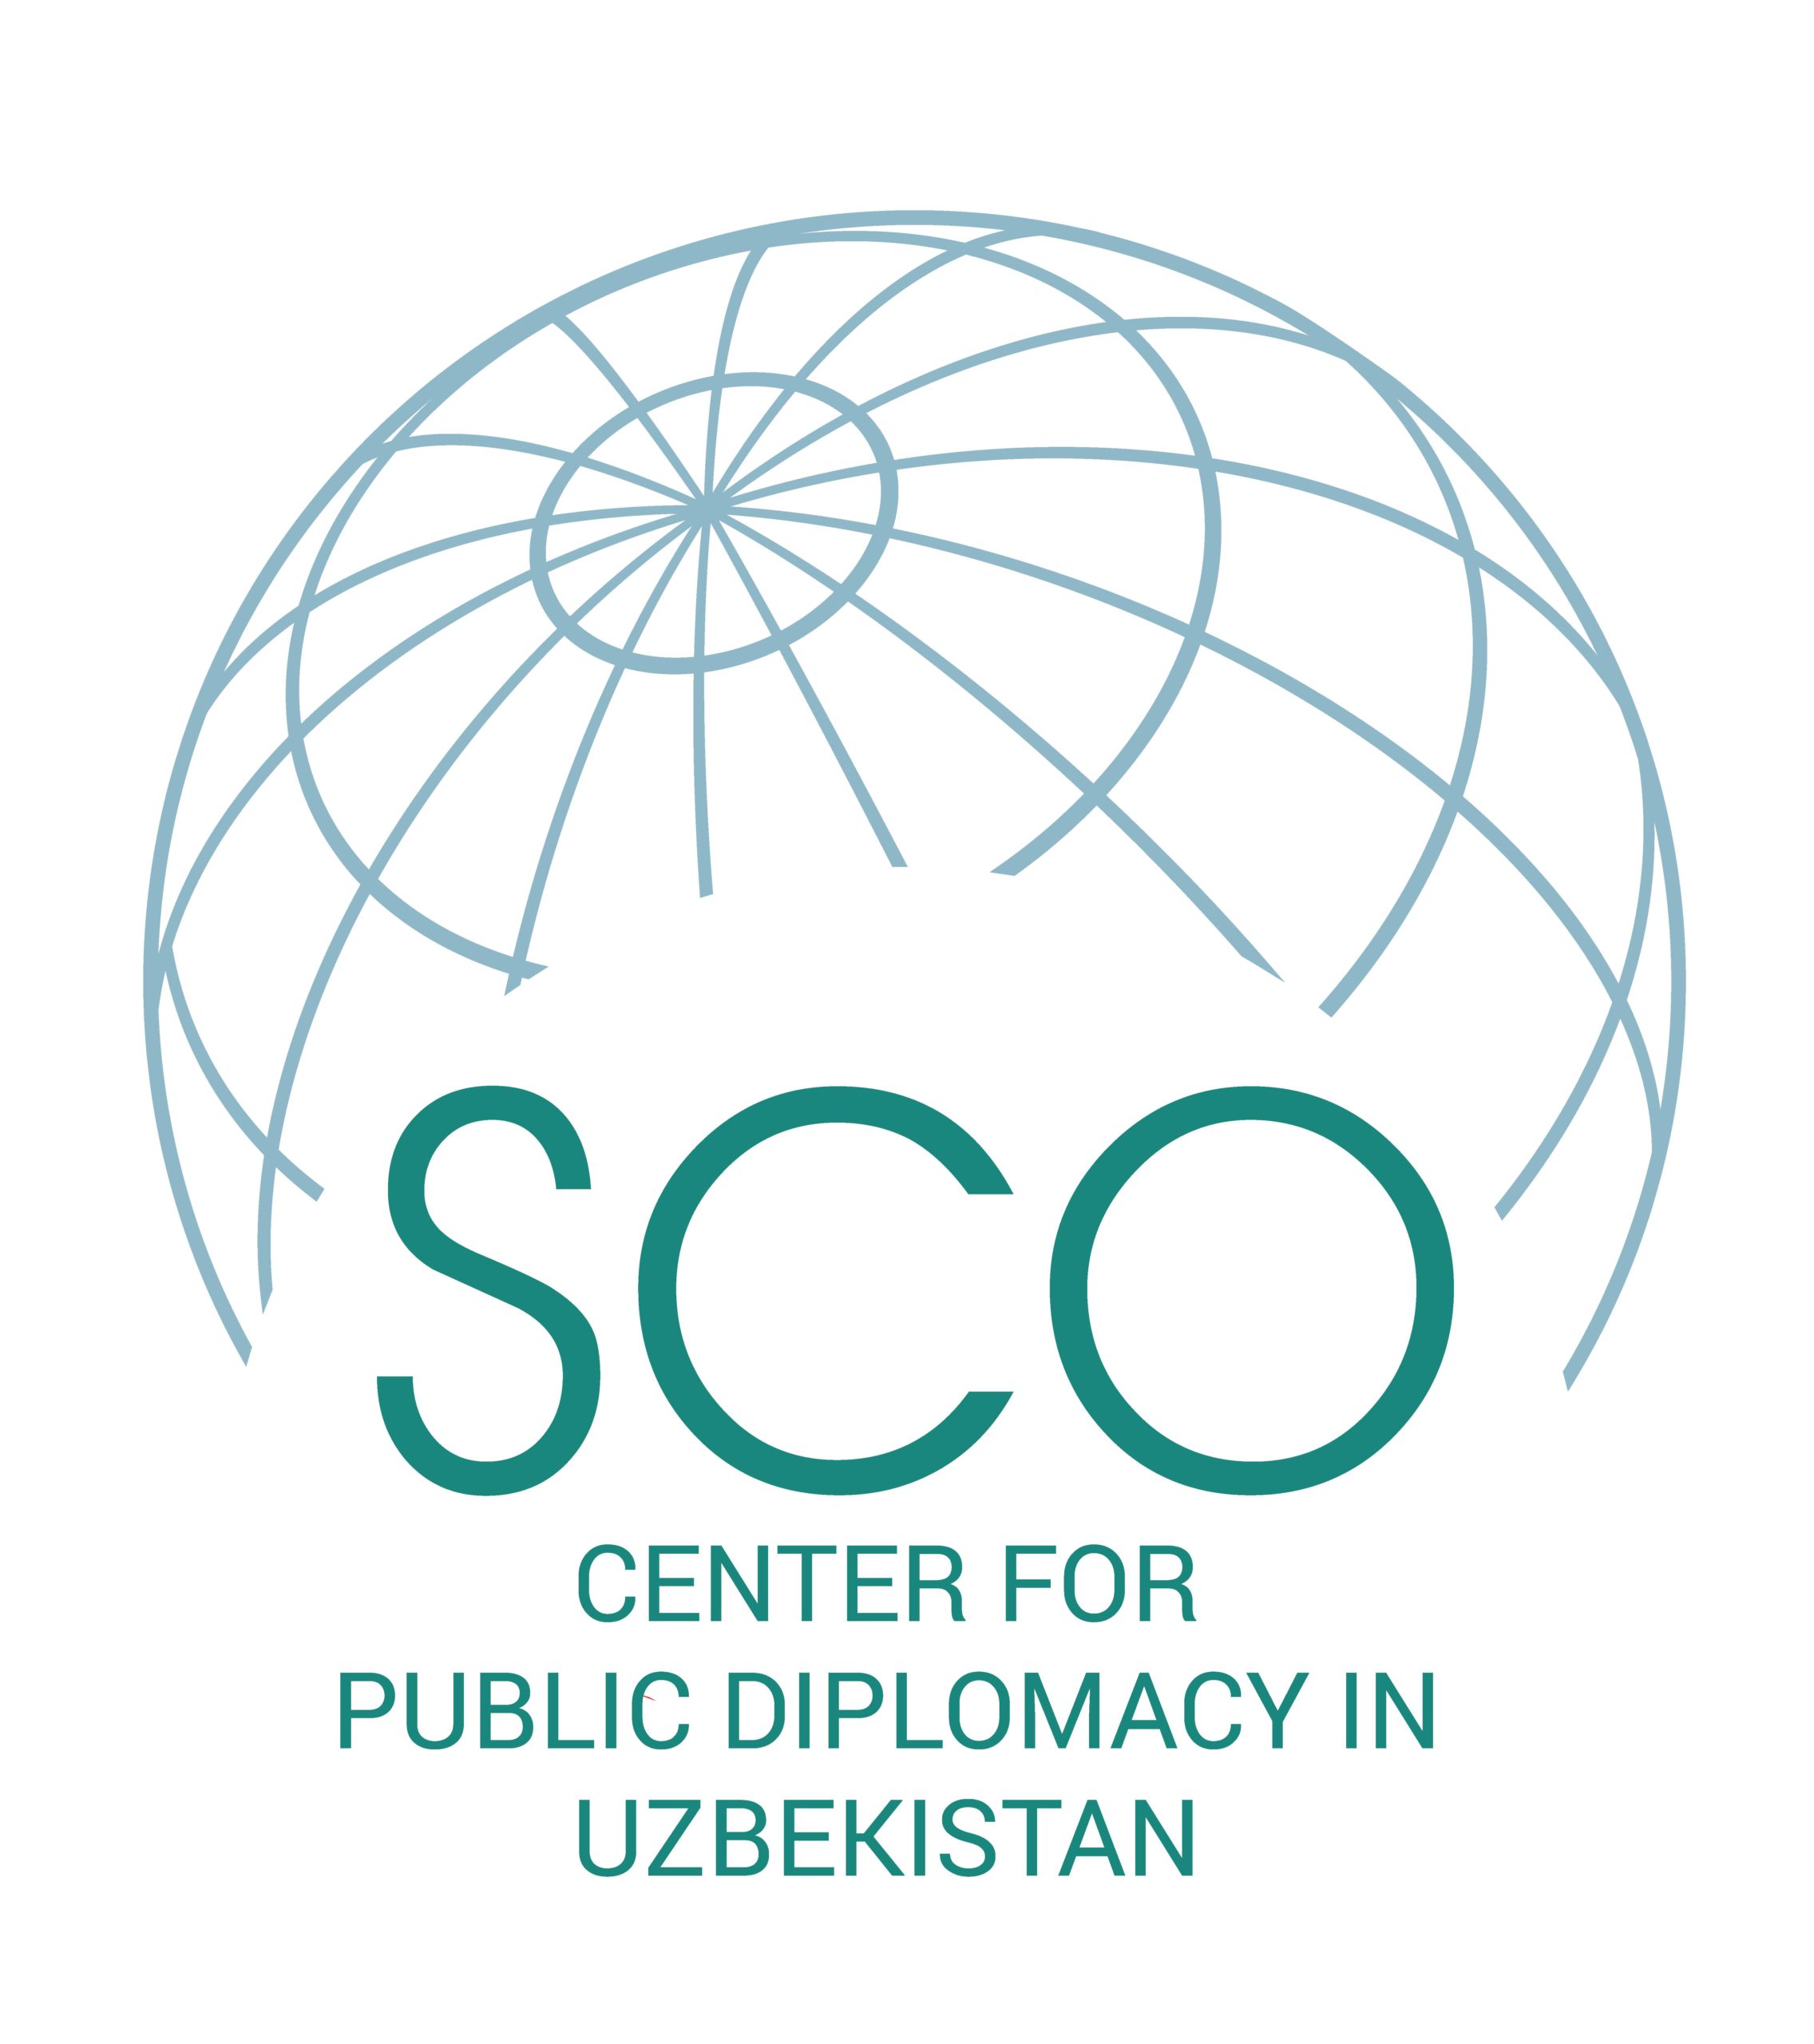 乌兹别克斯坦上海合作组织民间外交中心LOGO